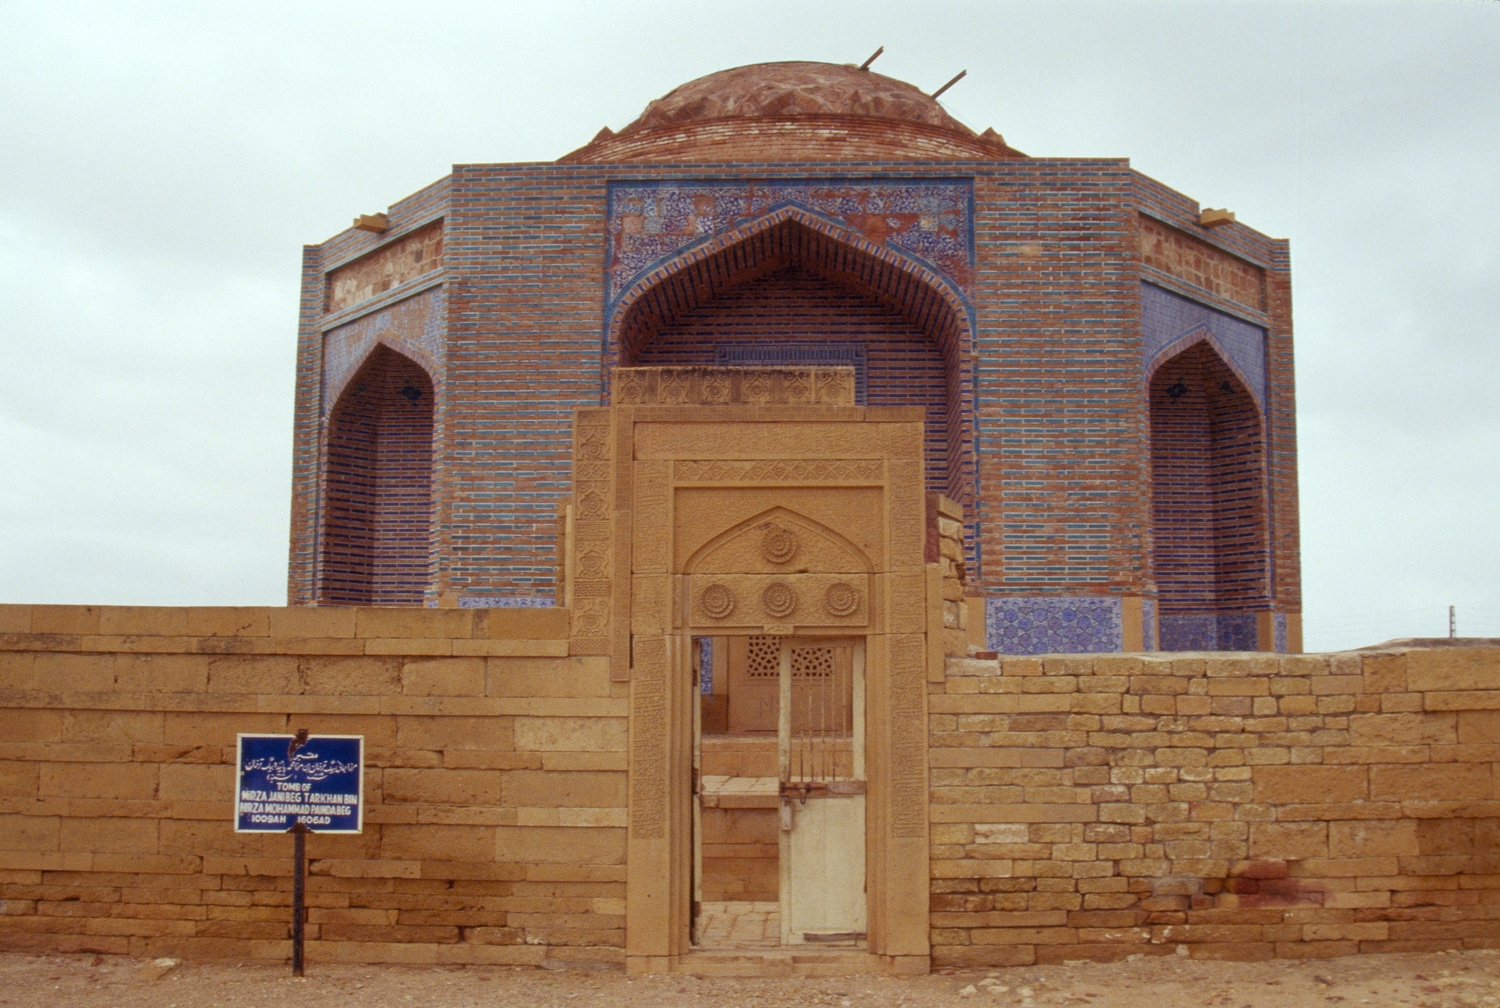 Entrance gate of carved sandstone